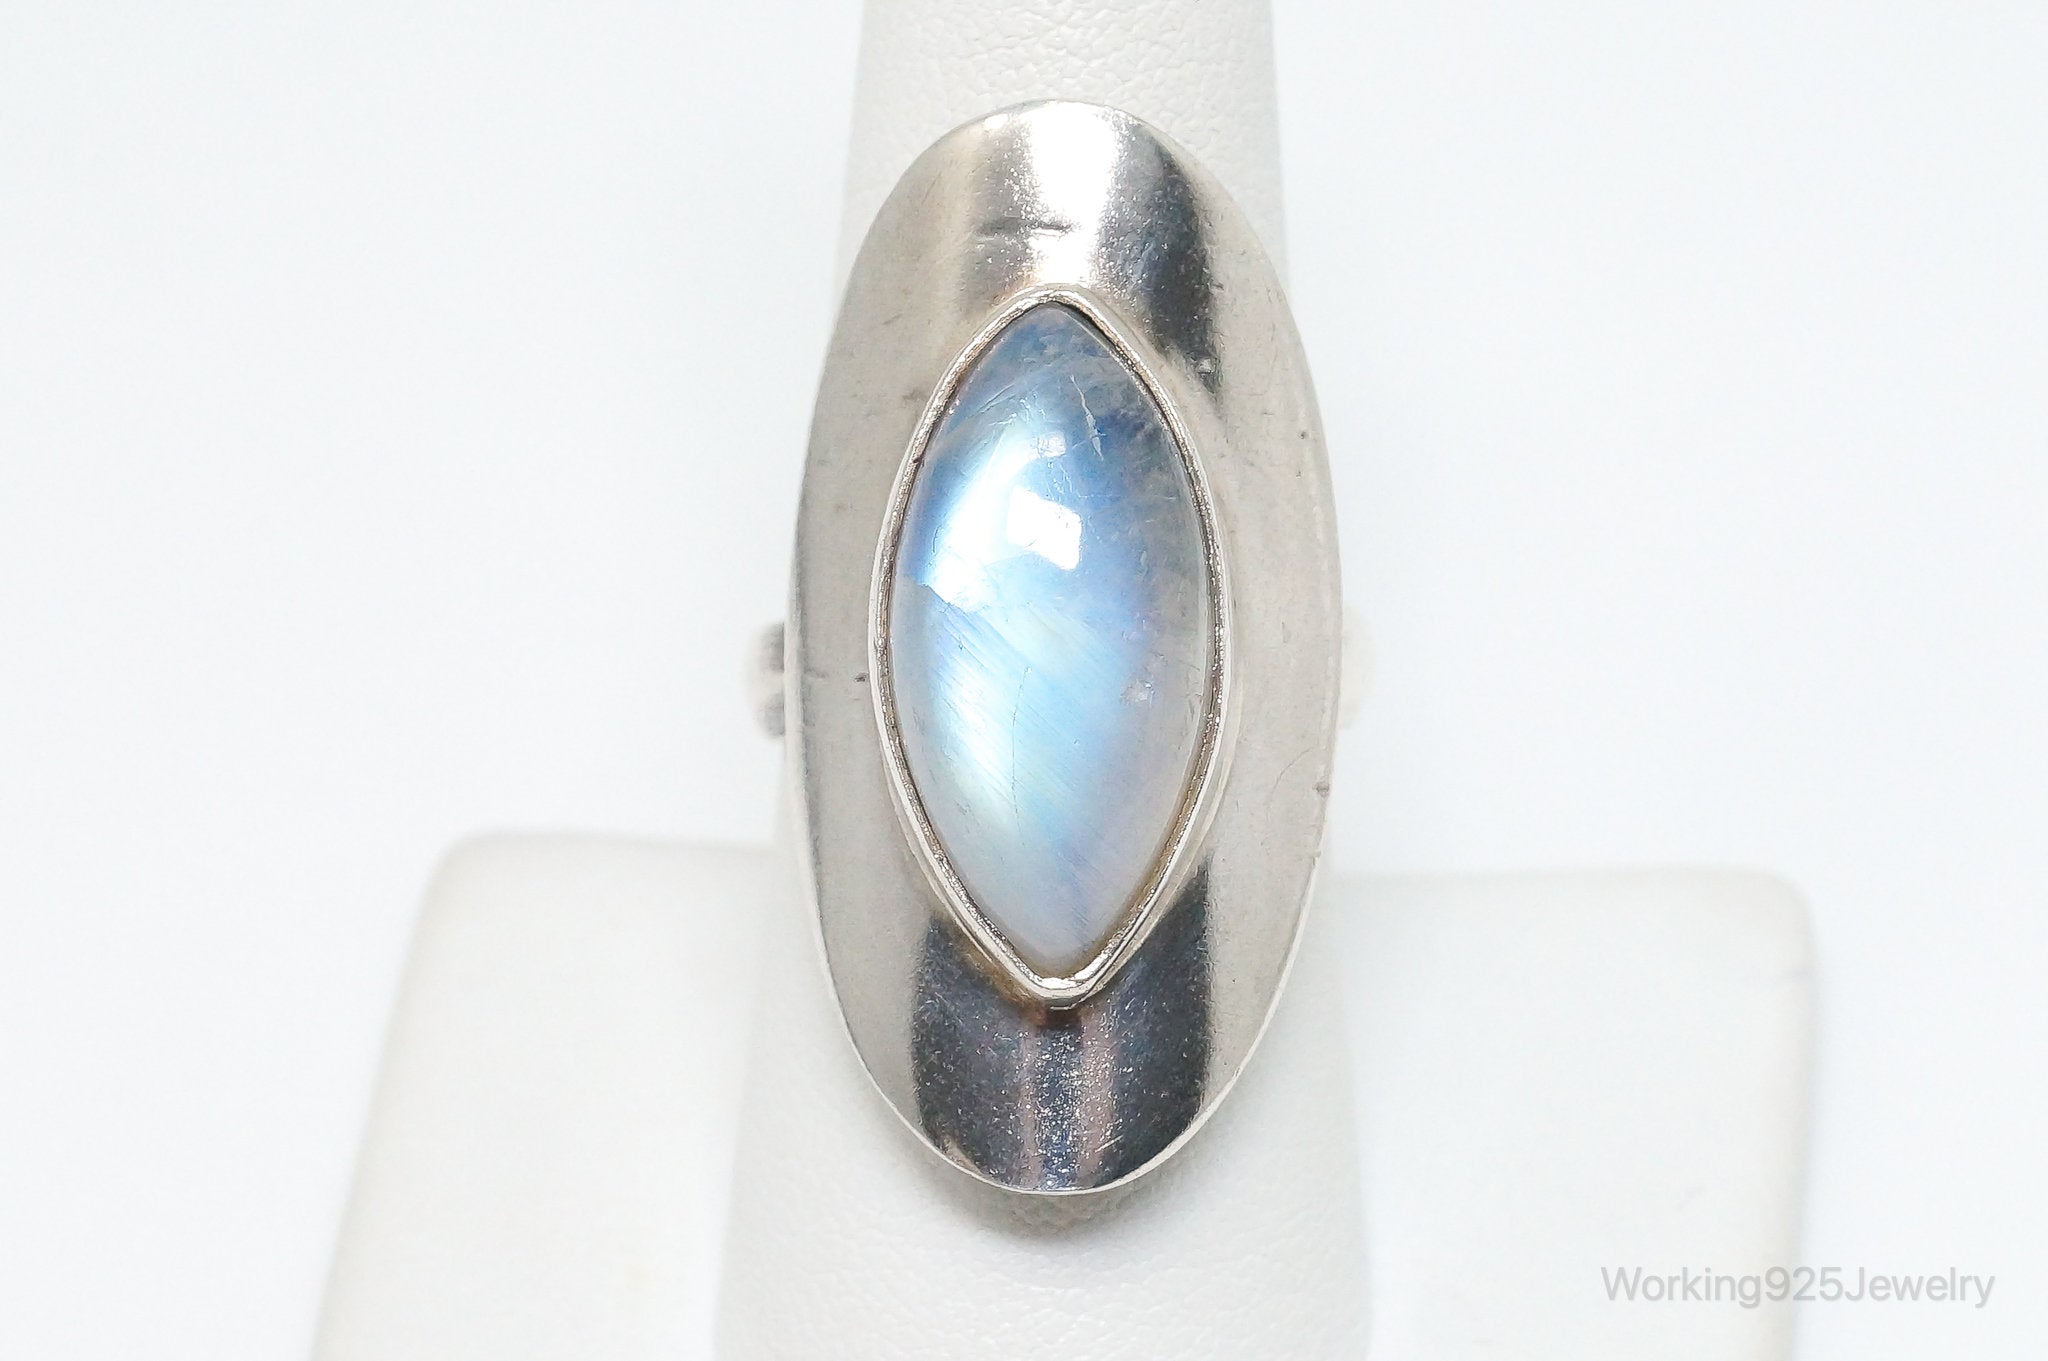 Vintage Moonstone Sterling Silver Ring - Size 8.25 Adjustable